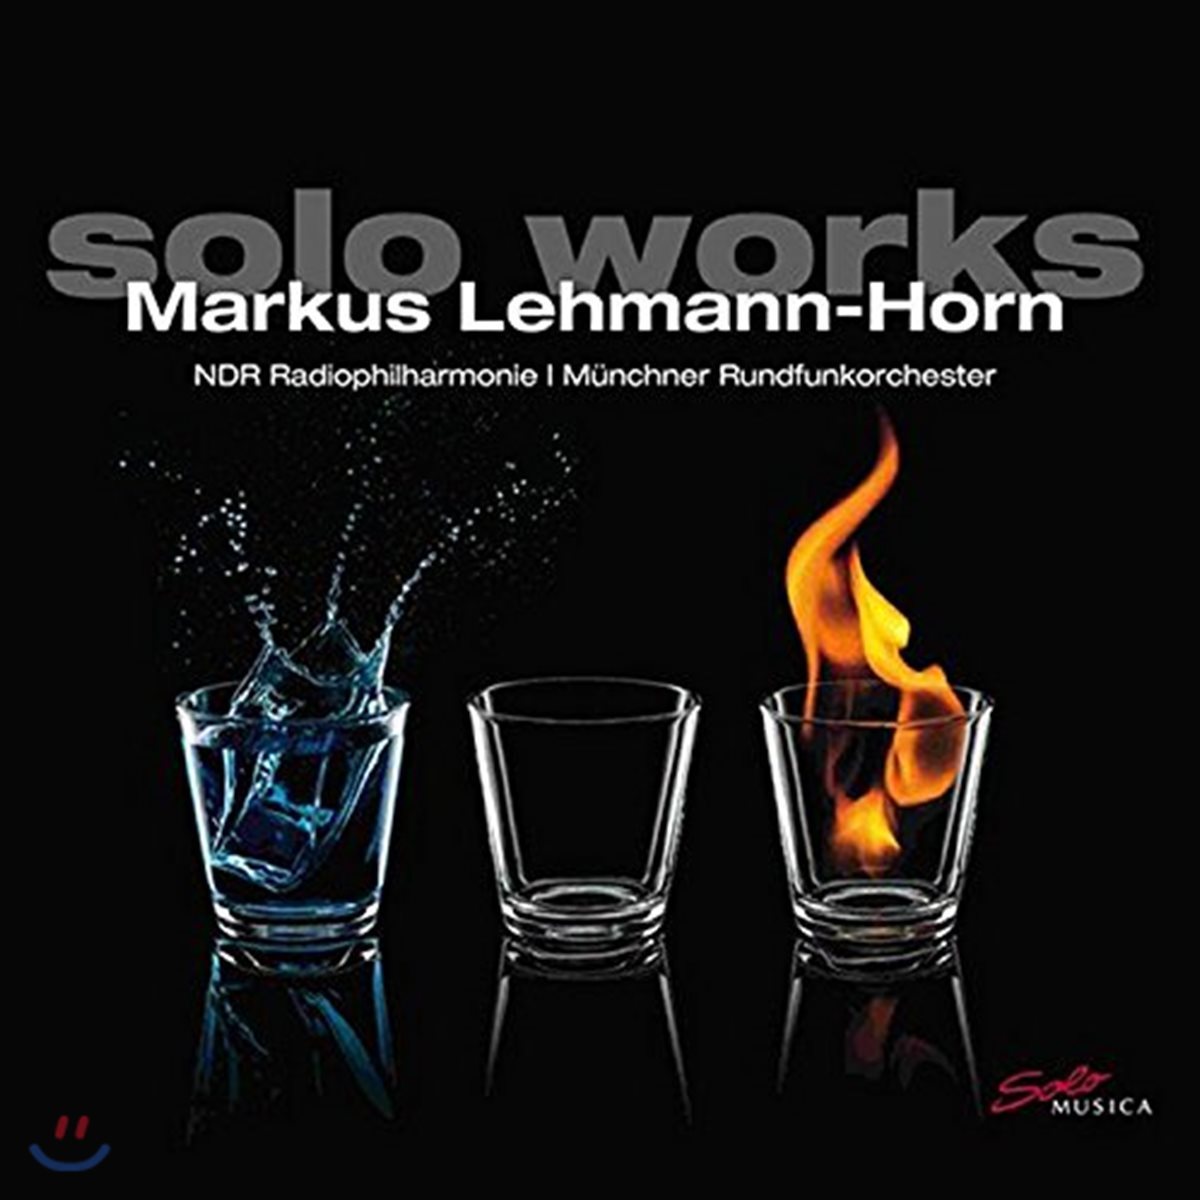 마르쿠스 레만-혼 작품집 (Markus Lehmann-Horn: Solo Works)